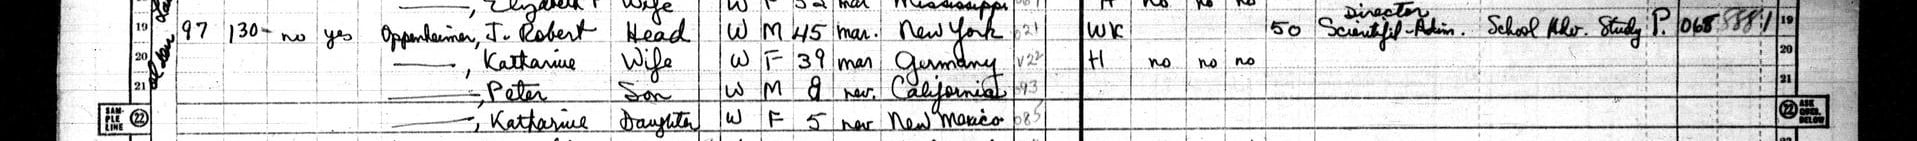 Oppenheimer und seine Familie in der US-Volkszählung von 1950 auf MyHeritage.